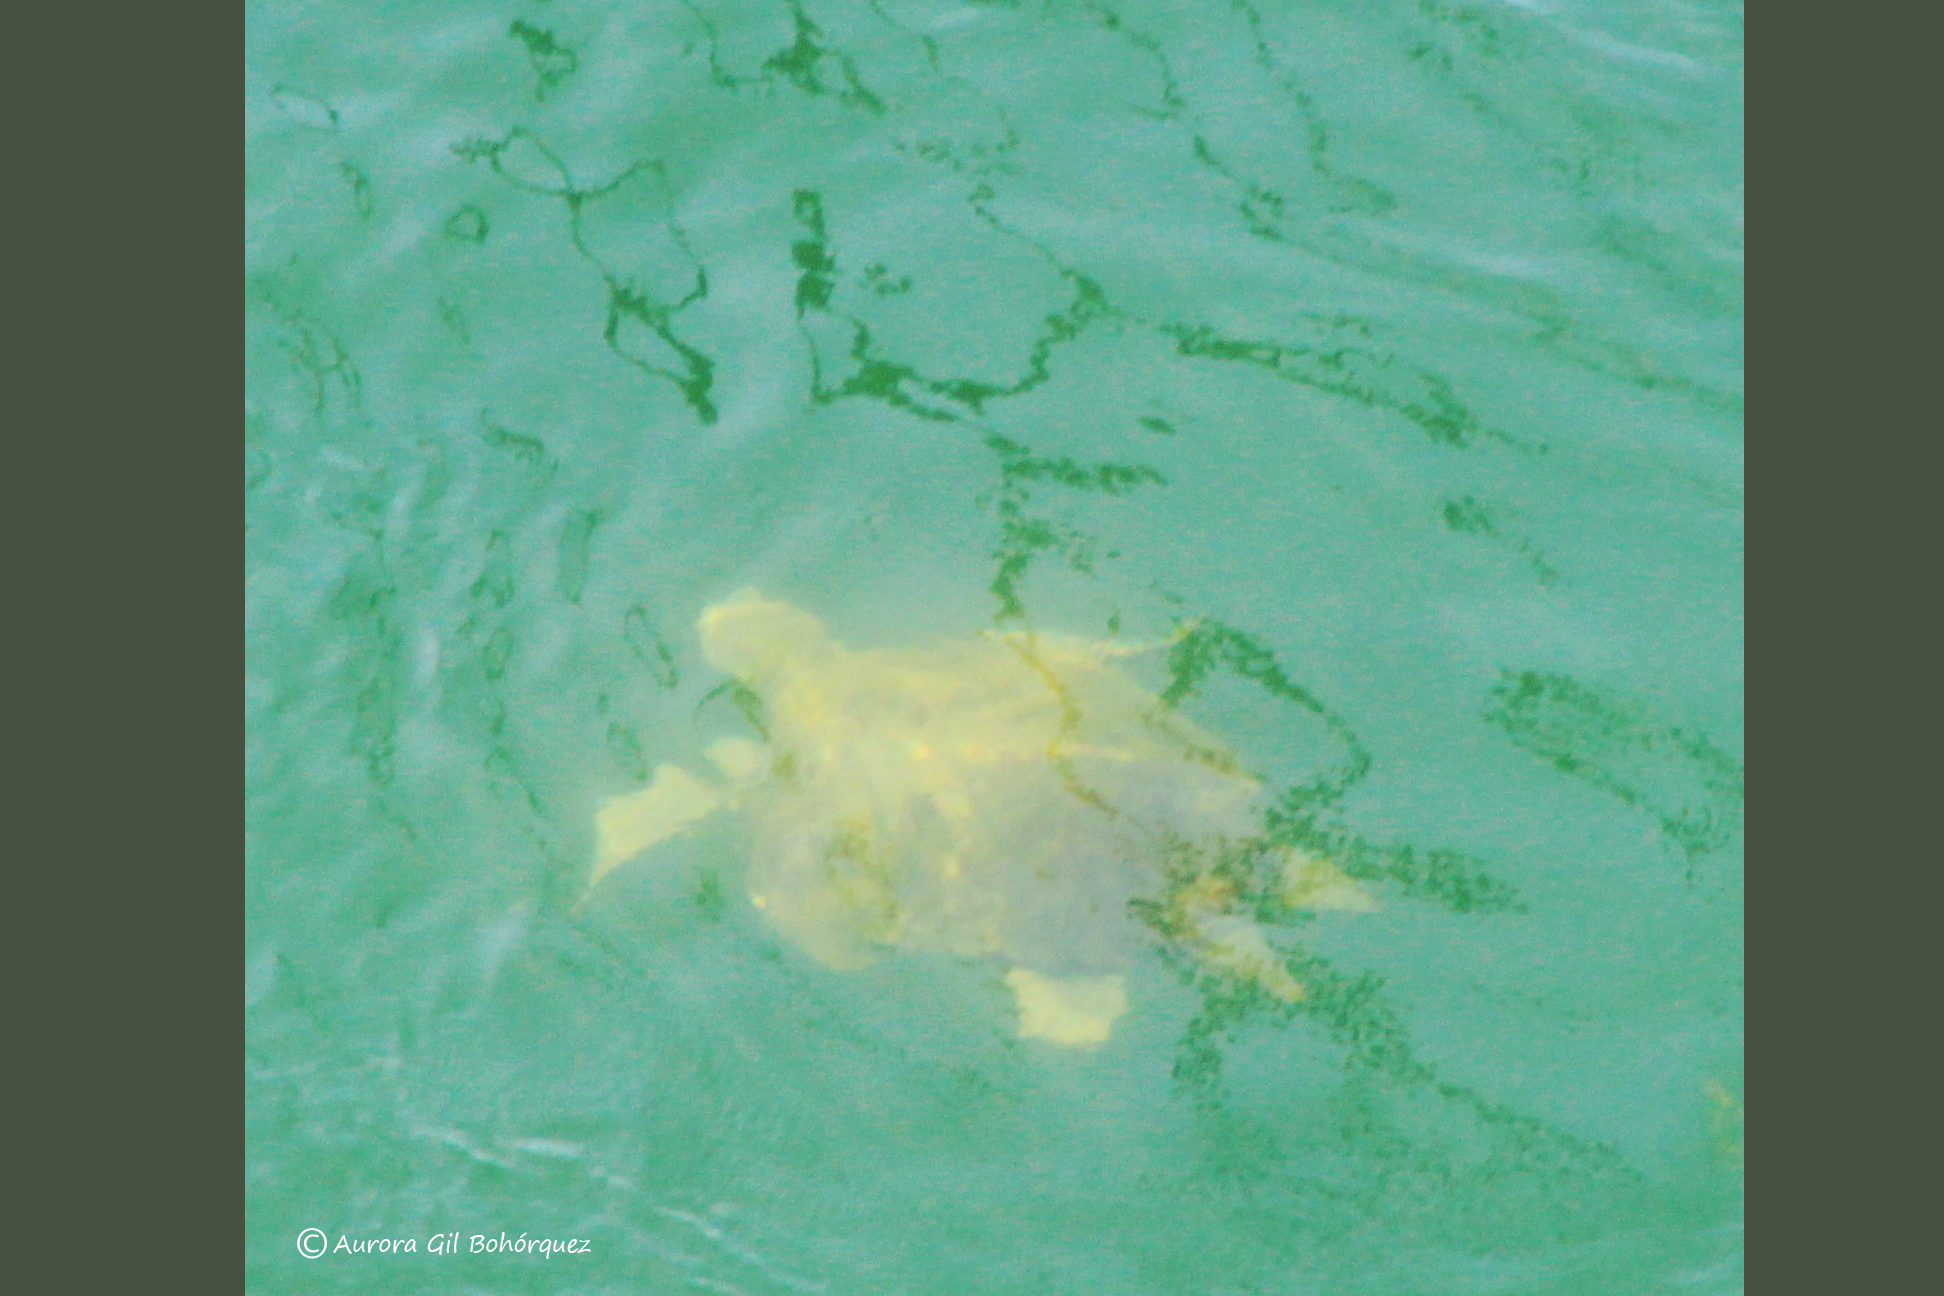 Ejemplar de tortuga marina vista cuando salía hoy por el puente del Estacio. Imagen: Aurora Gil Bohórquez